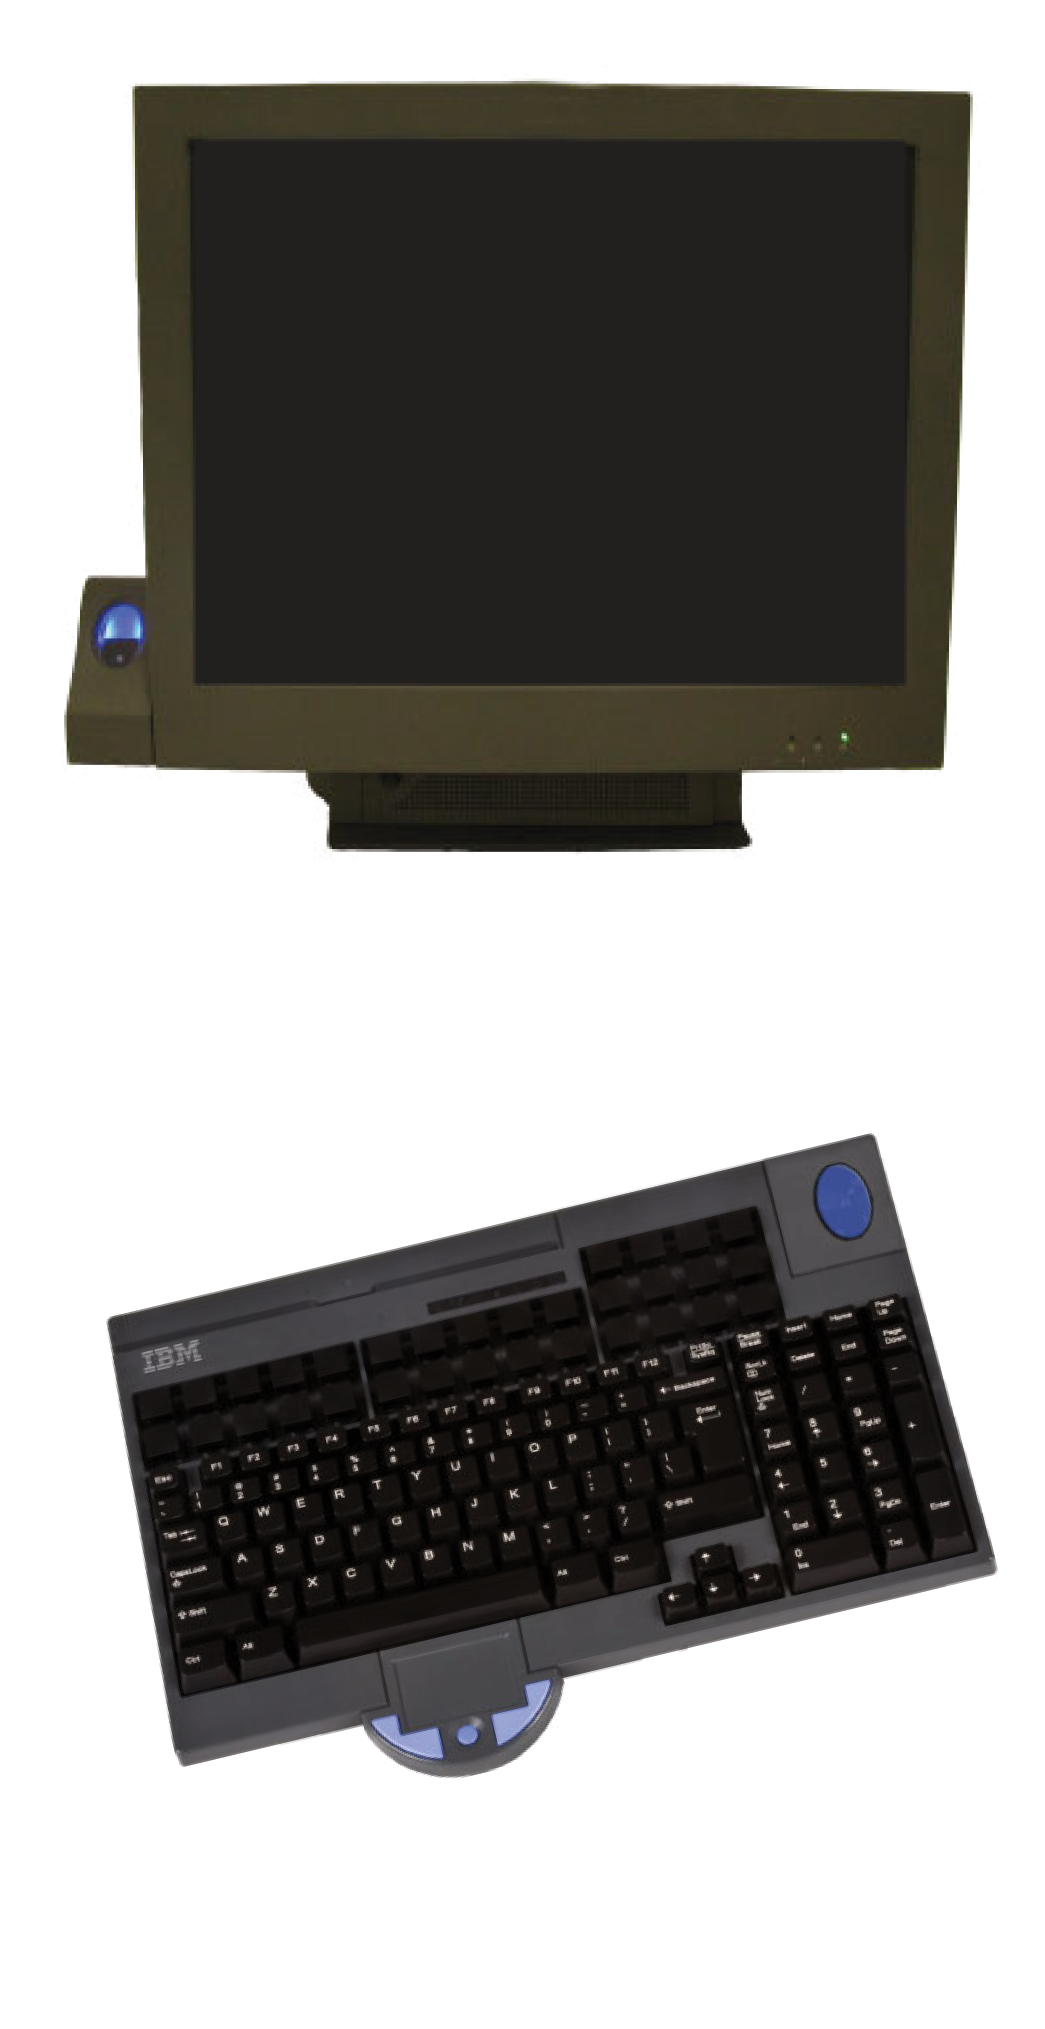 Toshiba Keyboard and Module